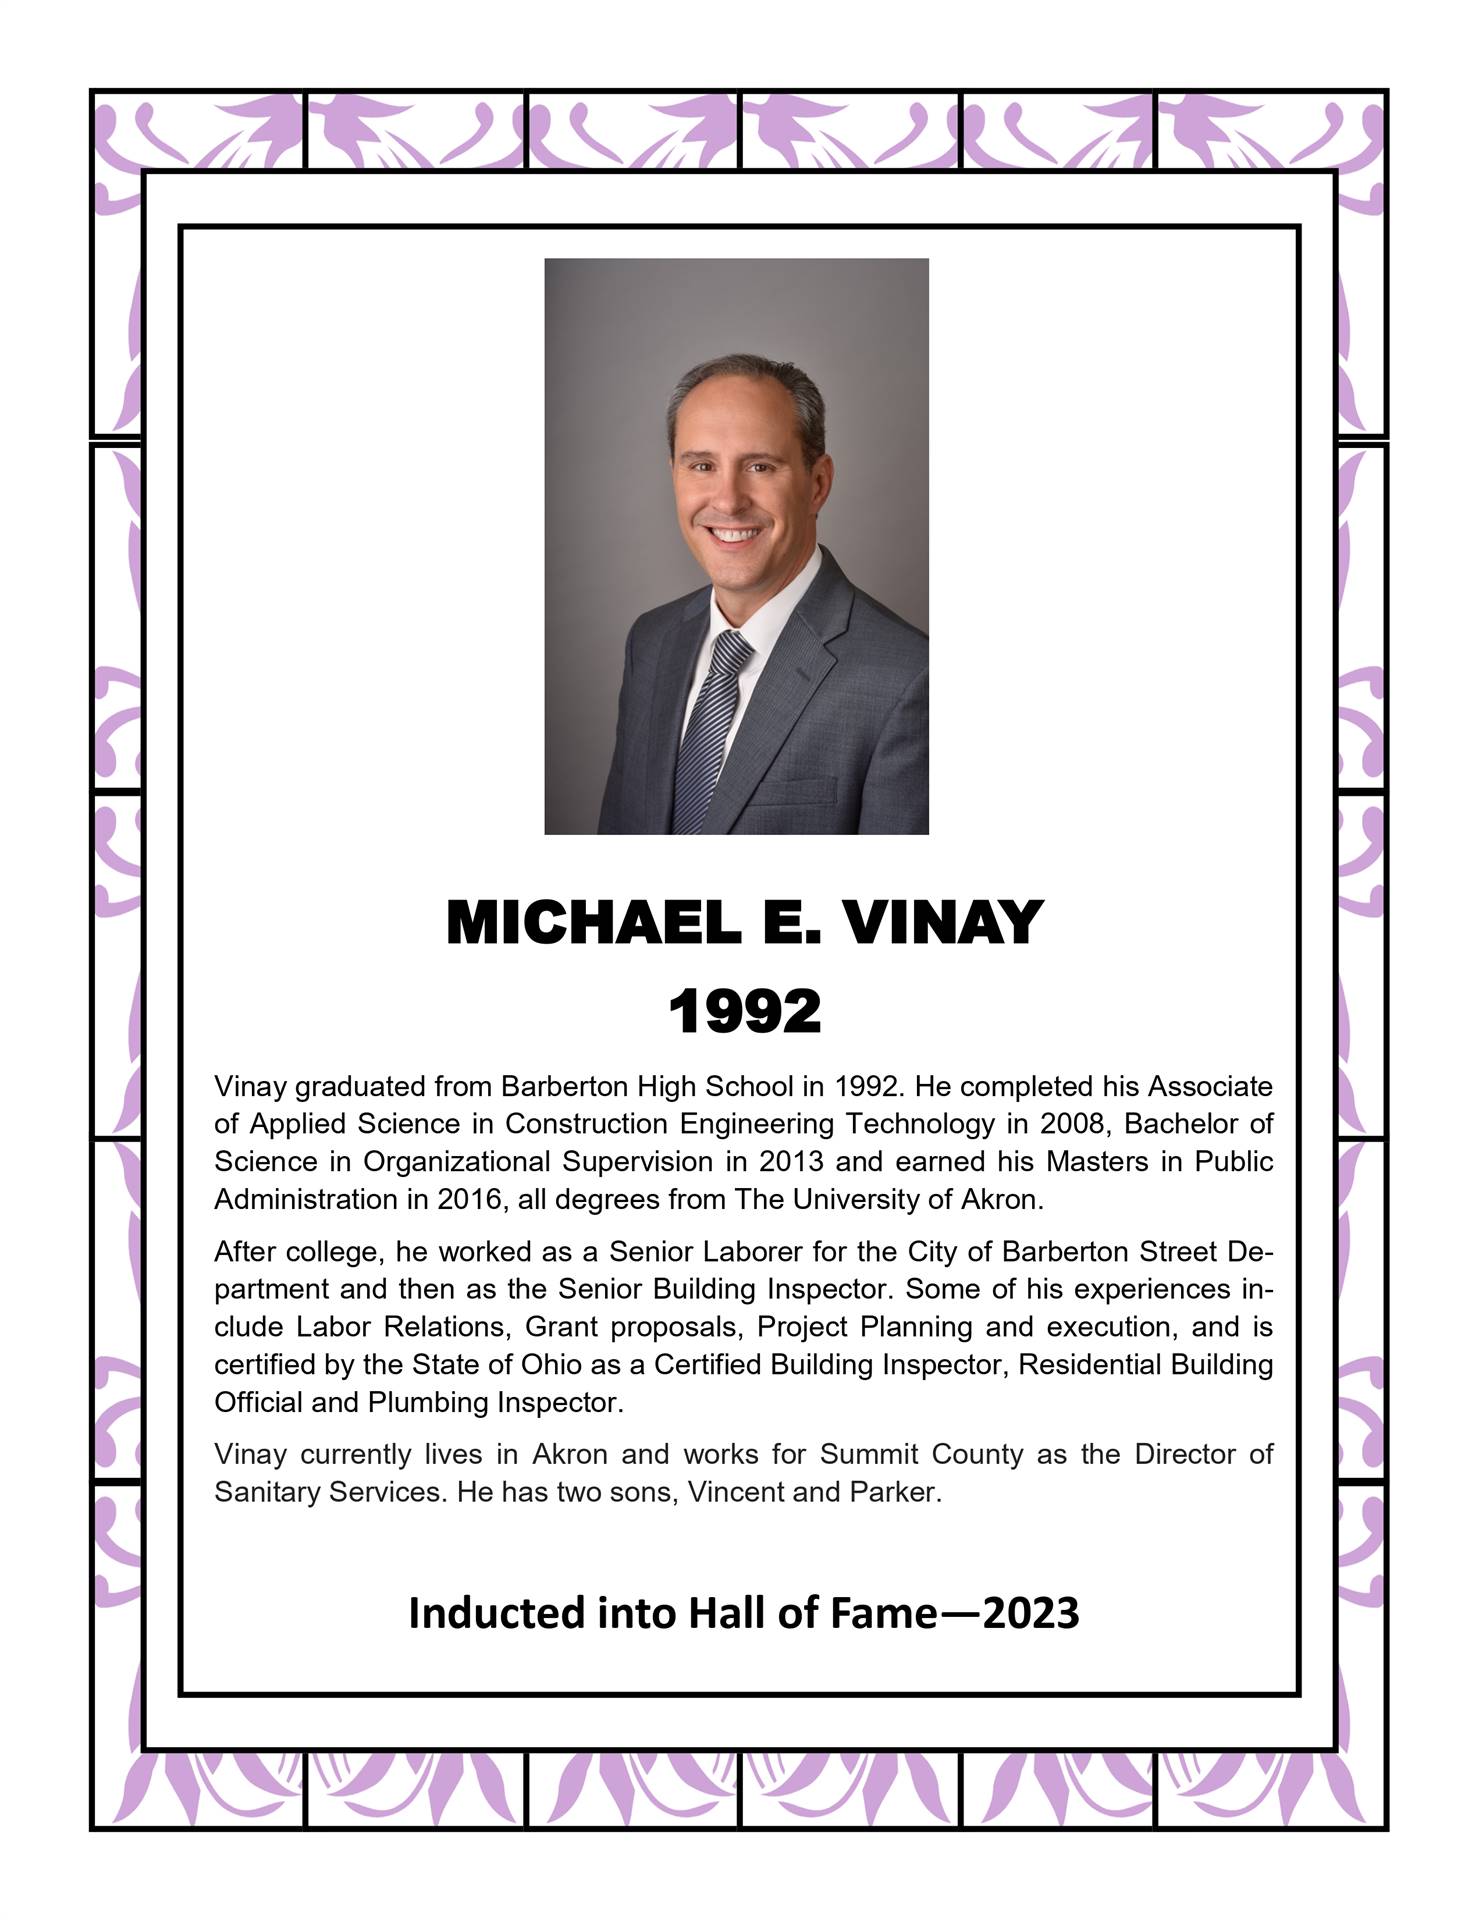 Michael E. Vinay